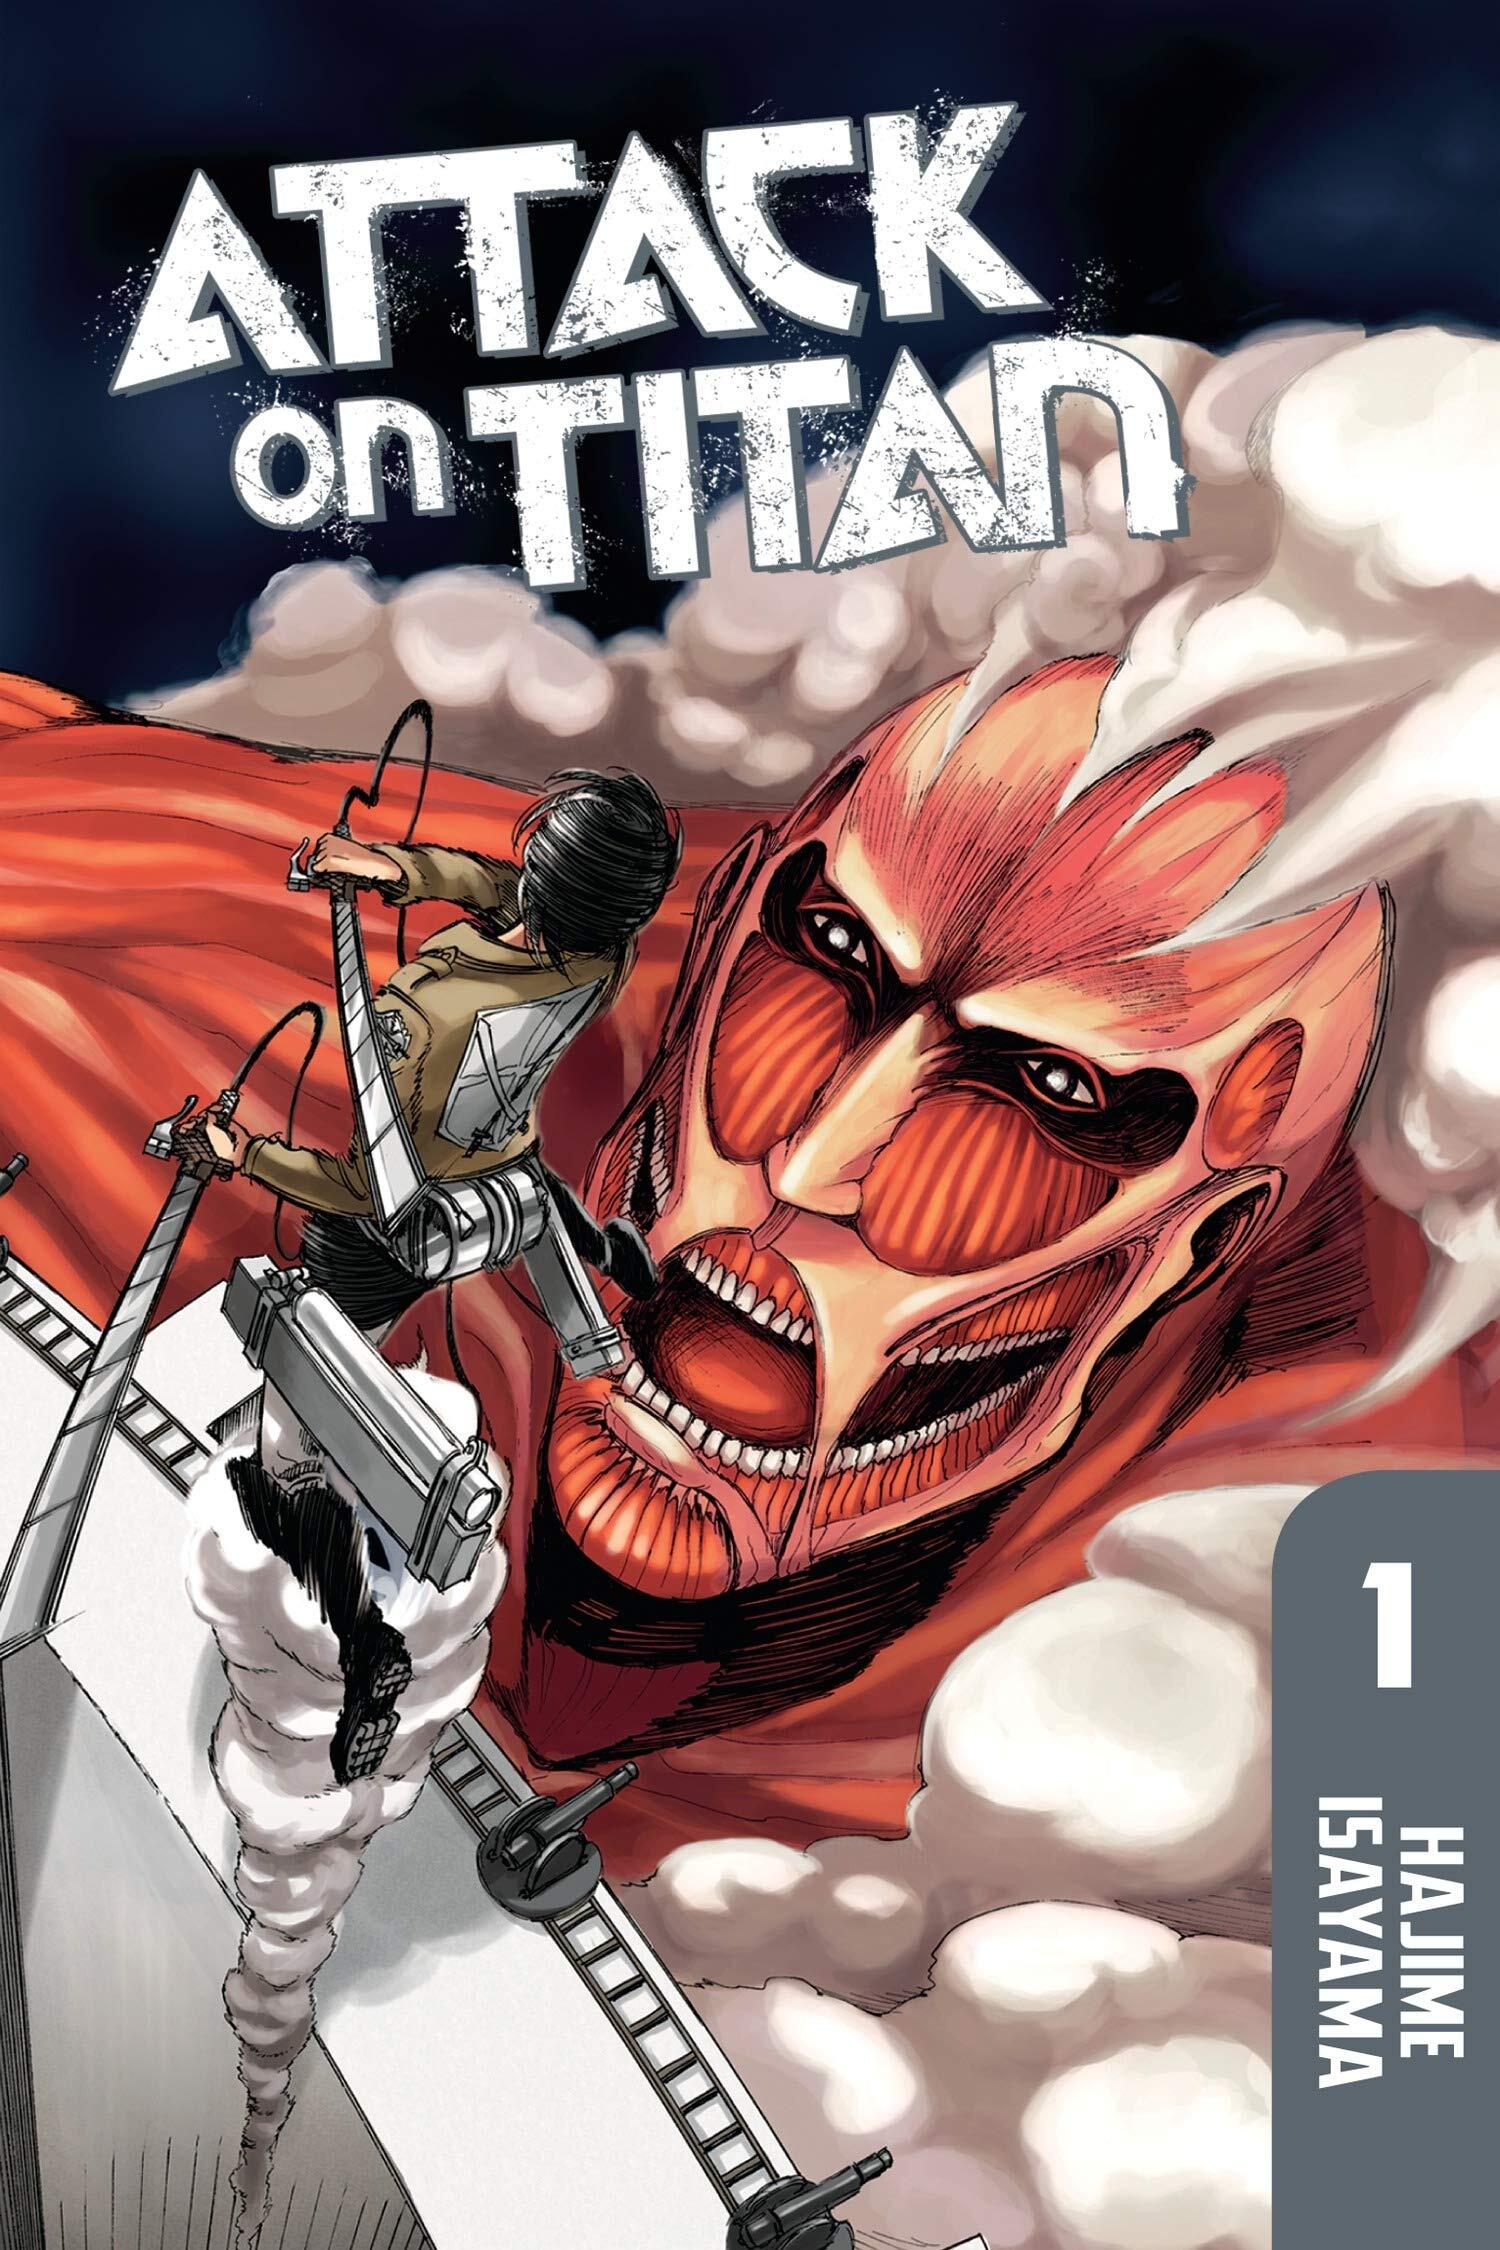 L'Attaque des Titans - Tome 01 - L'Attaque des Titans T01 - Hajime Isayama,  Hajime Isayama - broché - Achat Livre ou ebook